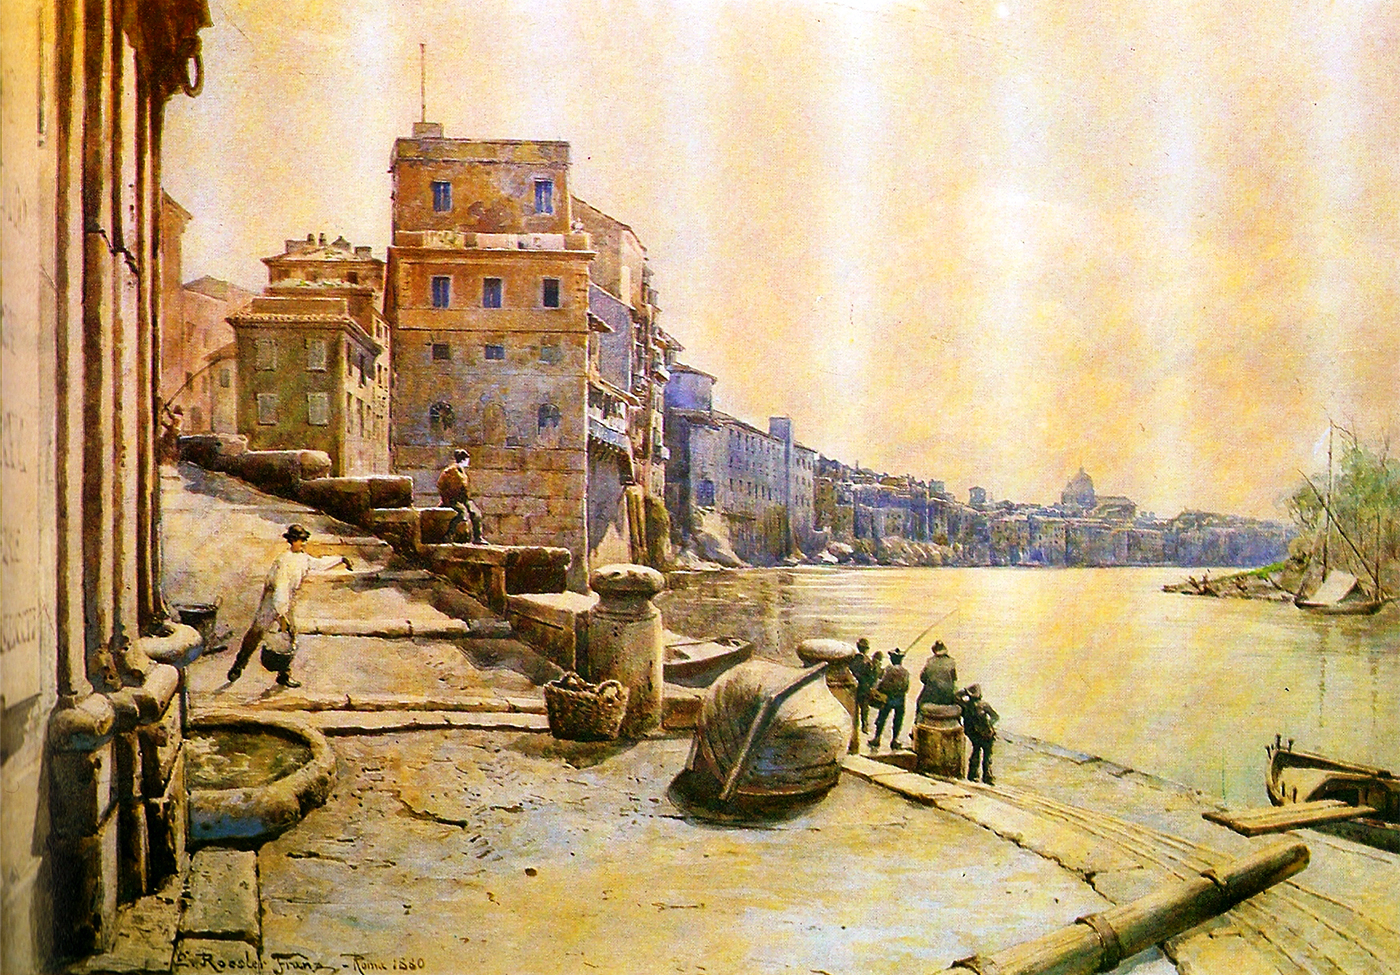 Il Porto di Ripetta in una suggestiva illustrazione d'epoca